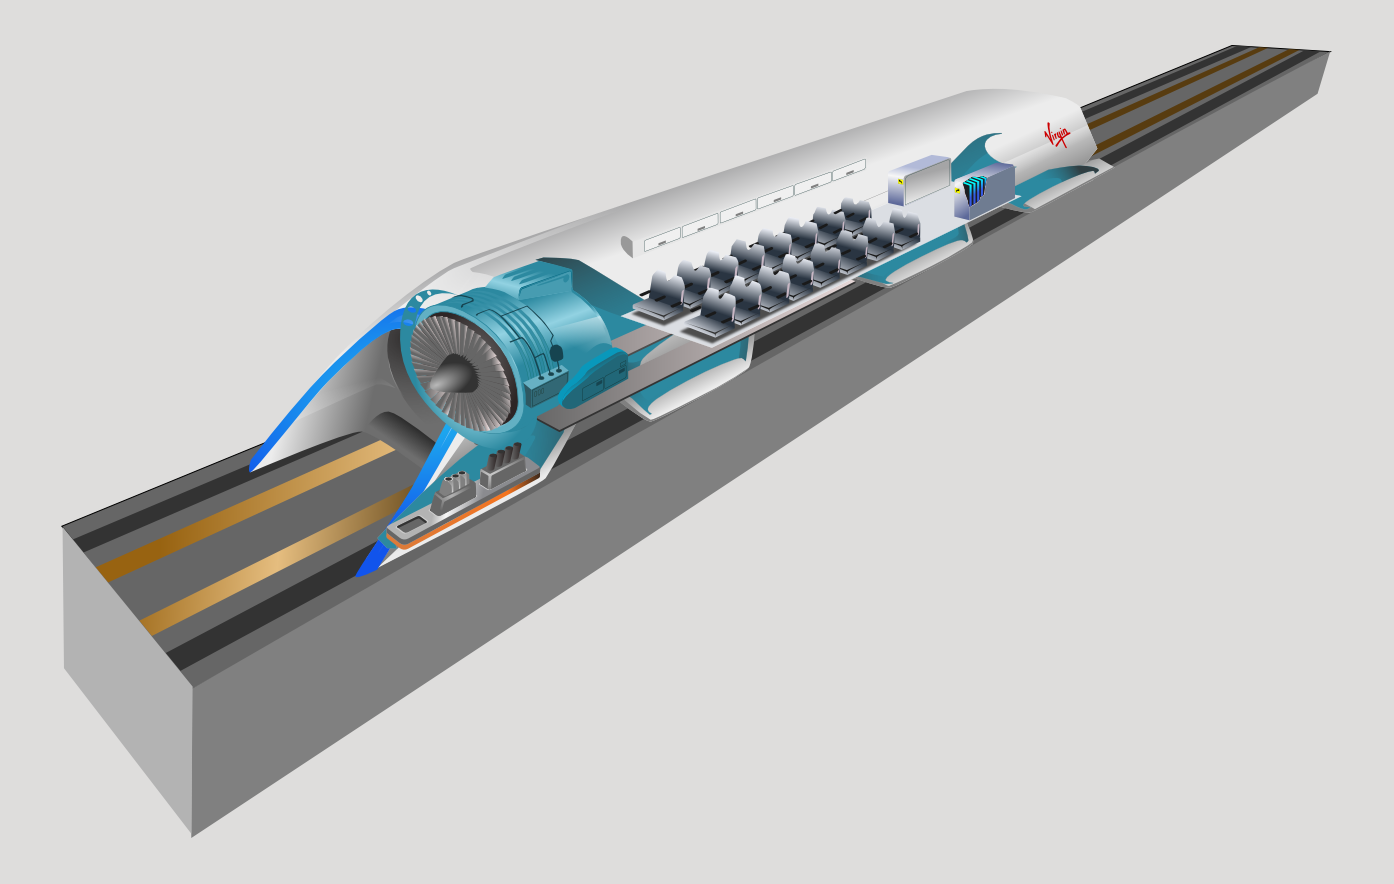 Hyperloop cutaway